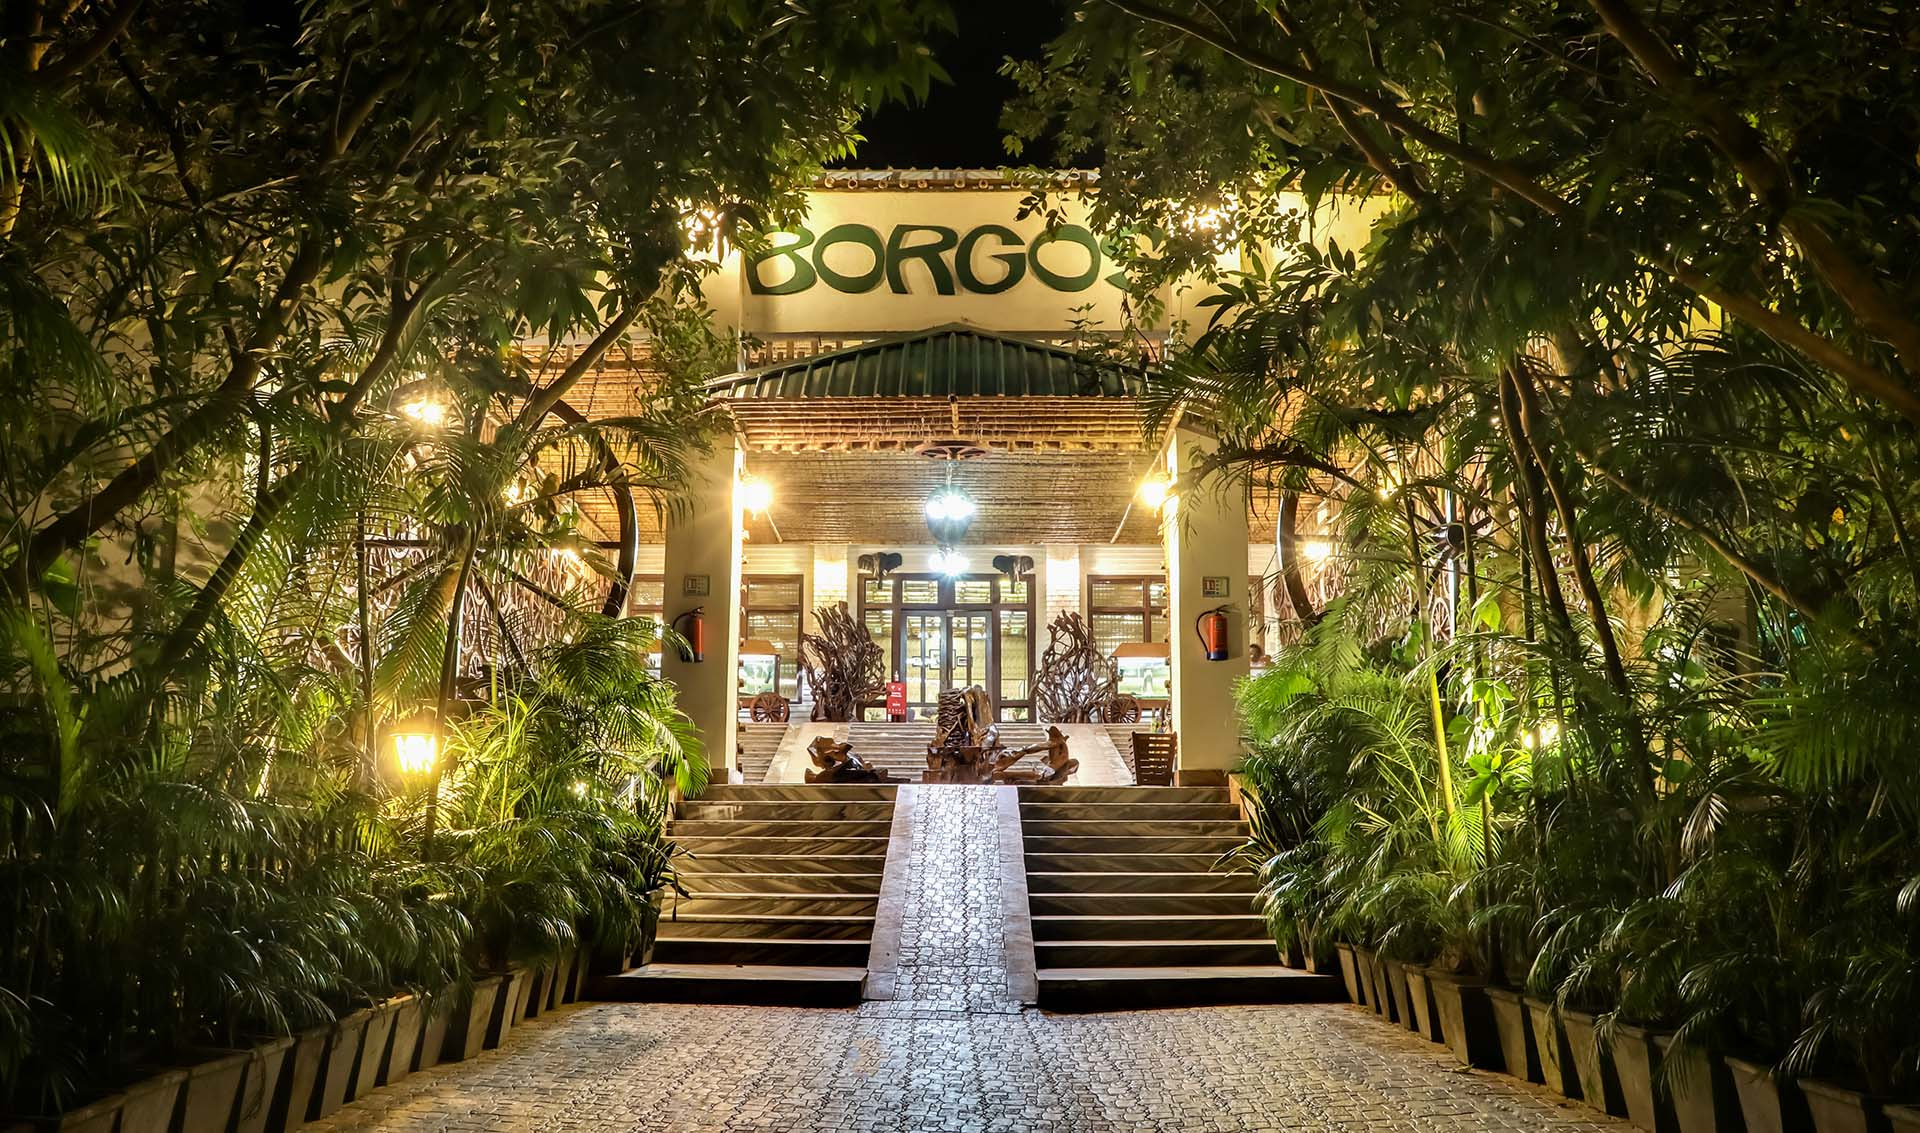 Resort Borgos